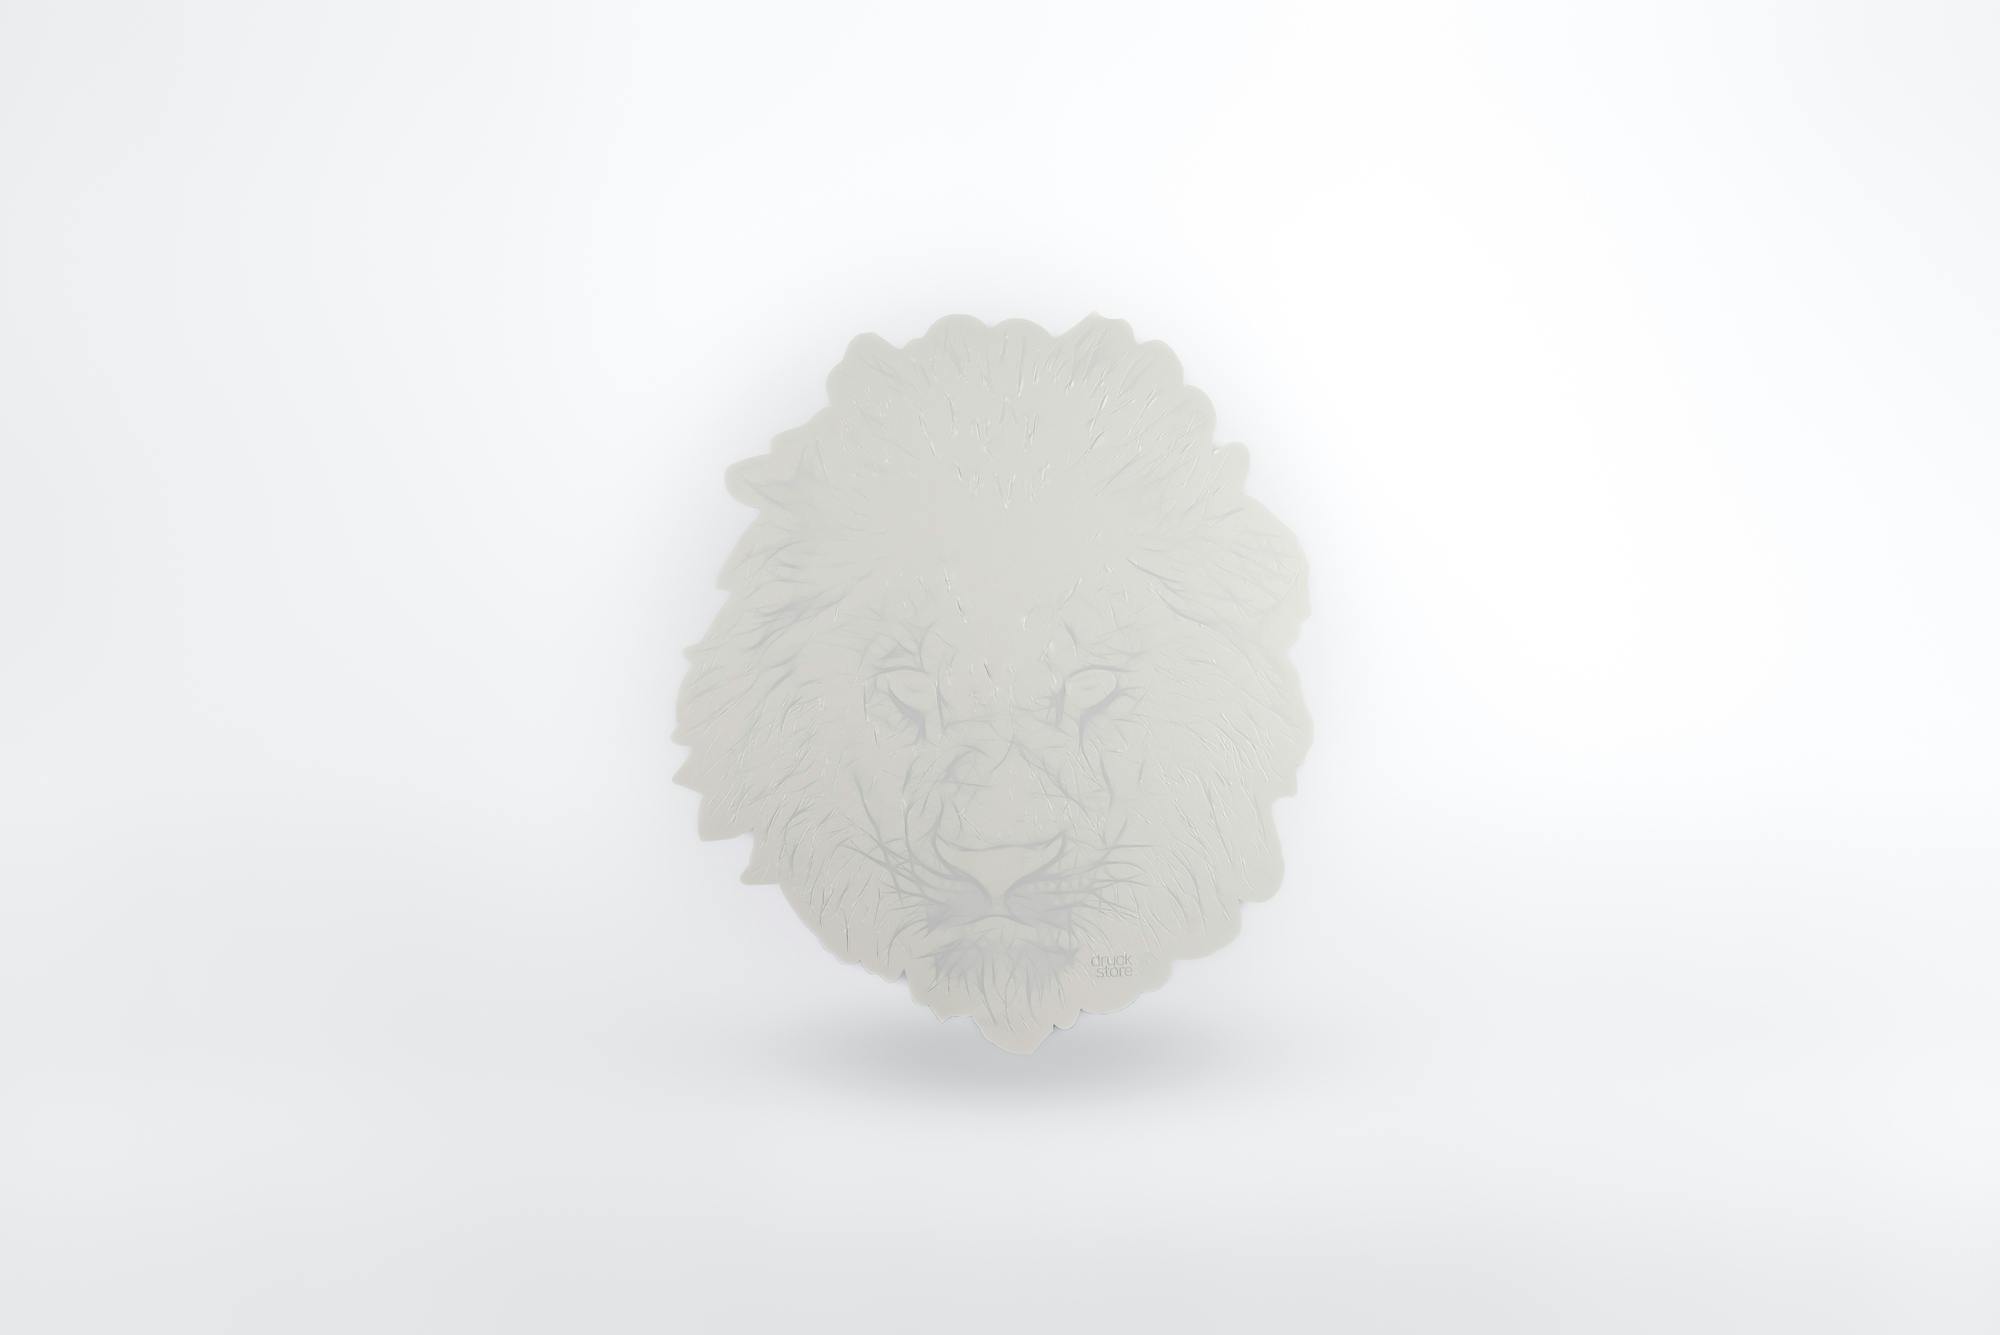 3D Lion Overview © swissQprint 